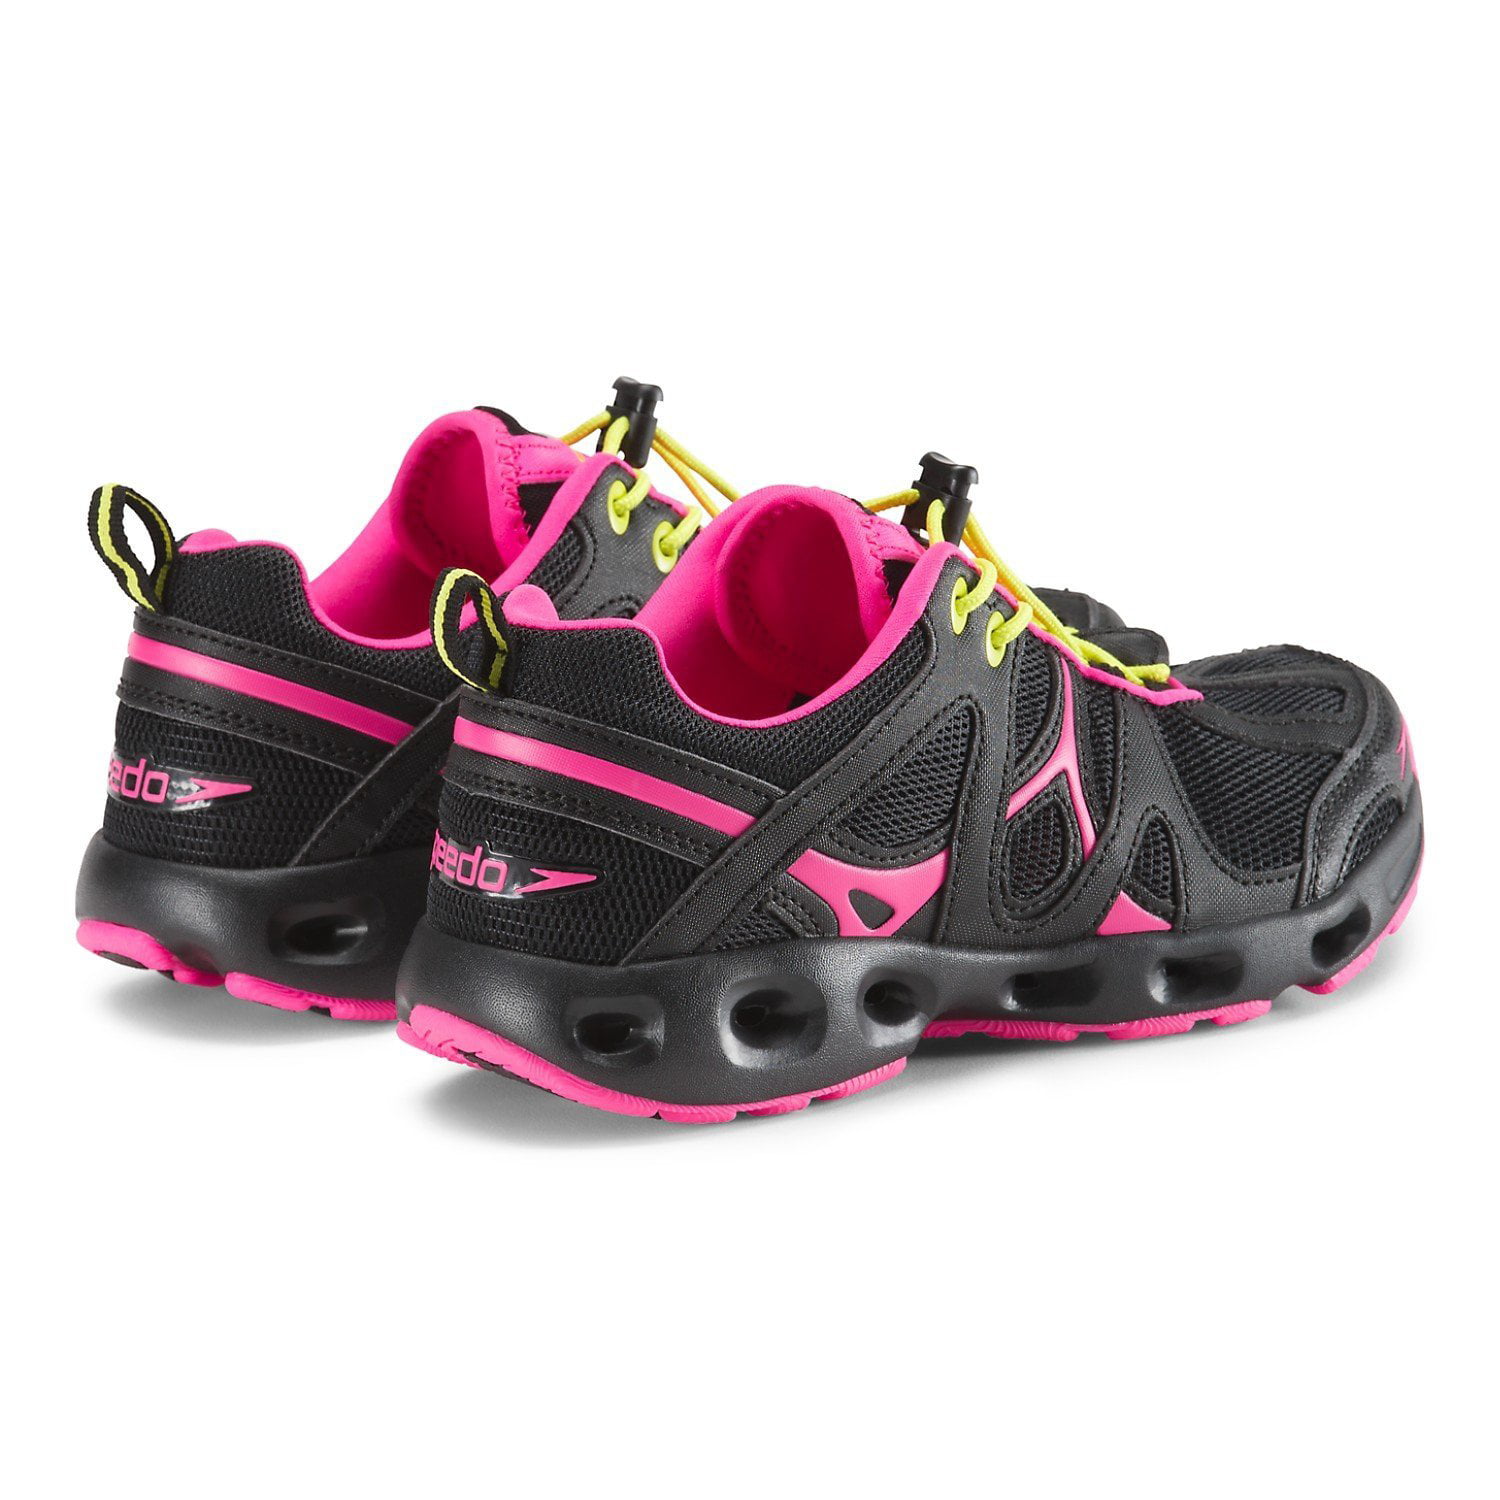 Pick Size NEW  Speedo Women's Hydro Comfort 4.0 Outdoor Water Shoe Black Pink 